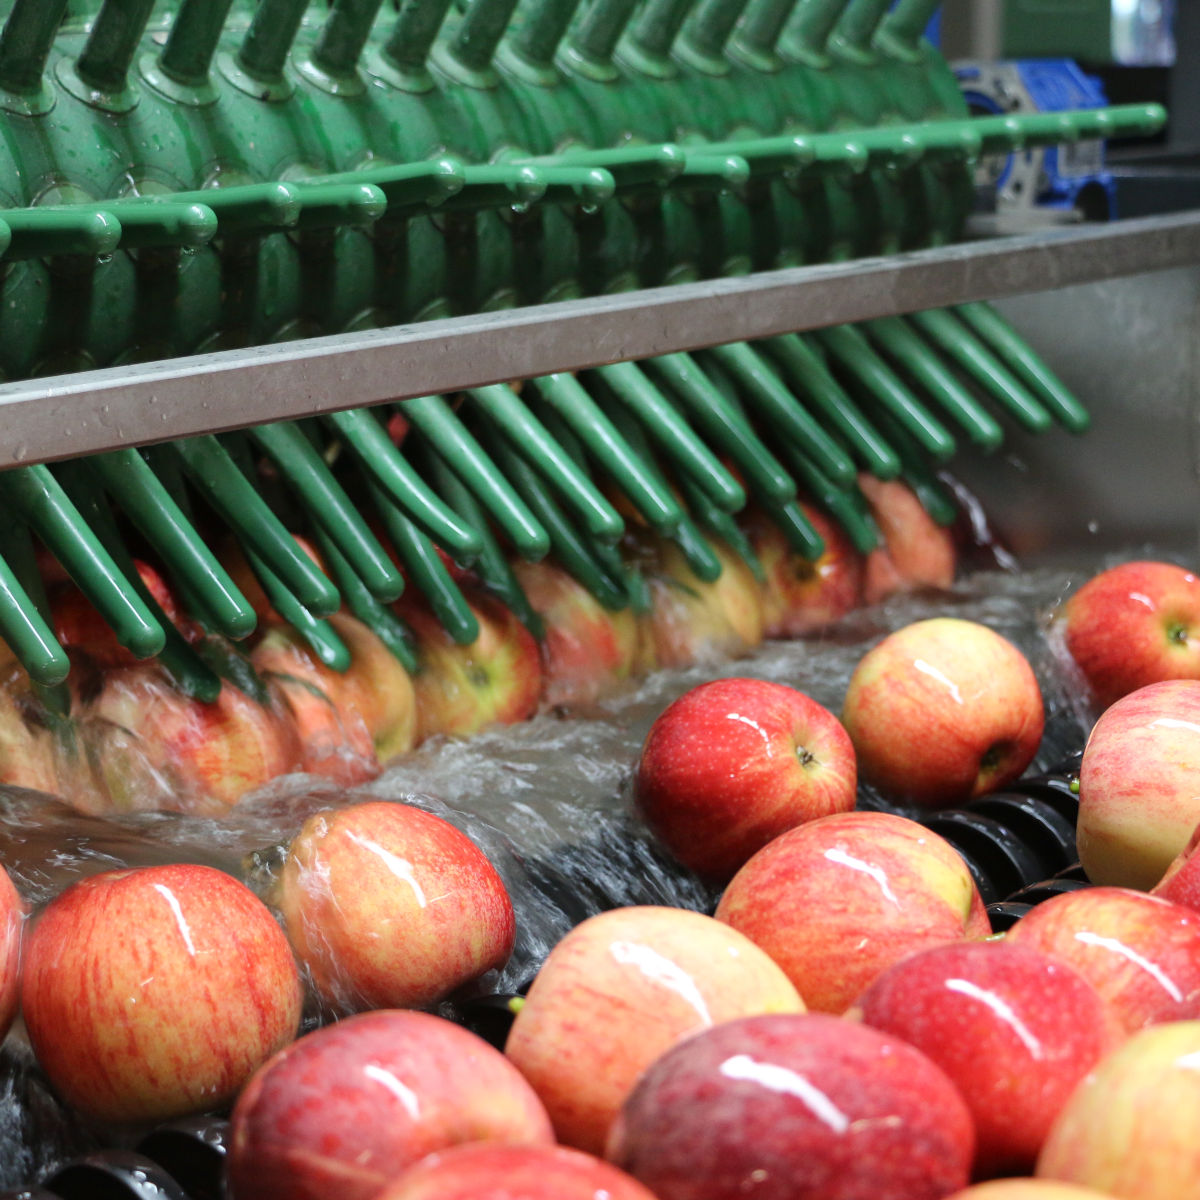 Foto von Äpfeln in der wasserführenden Sortieranlage.